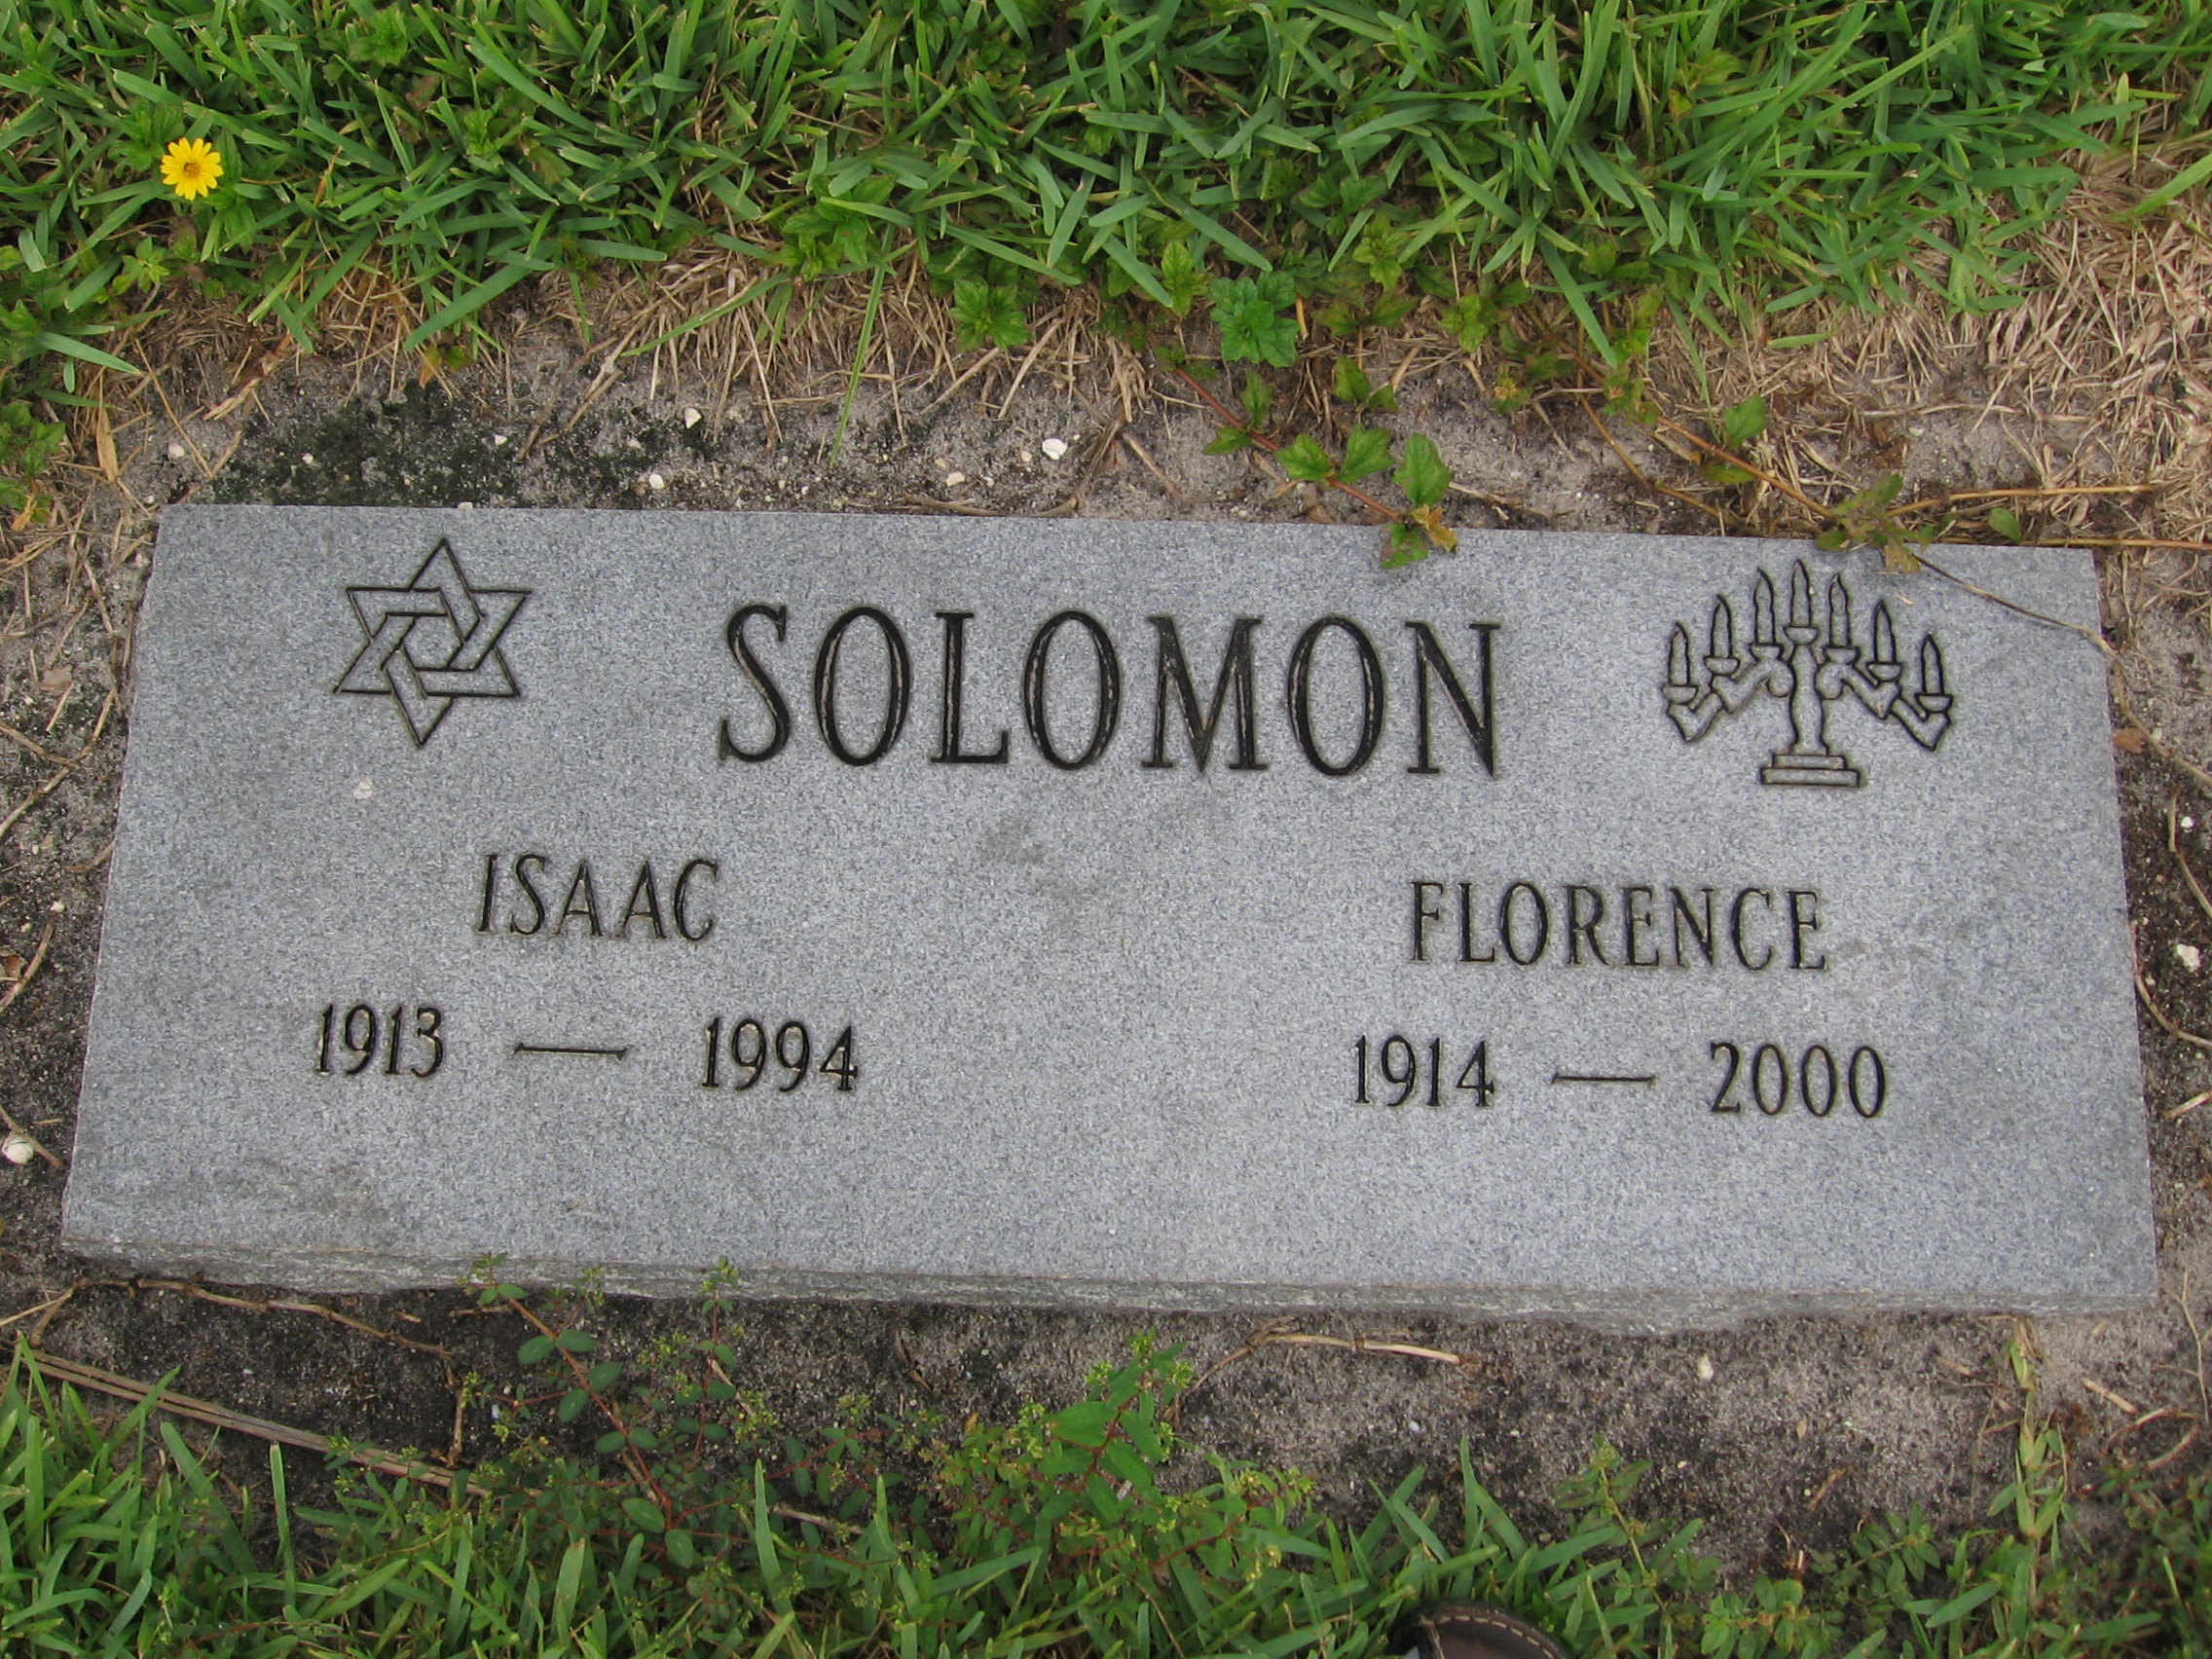 Isaac Solomon